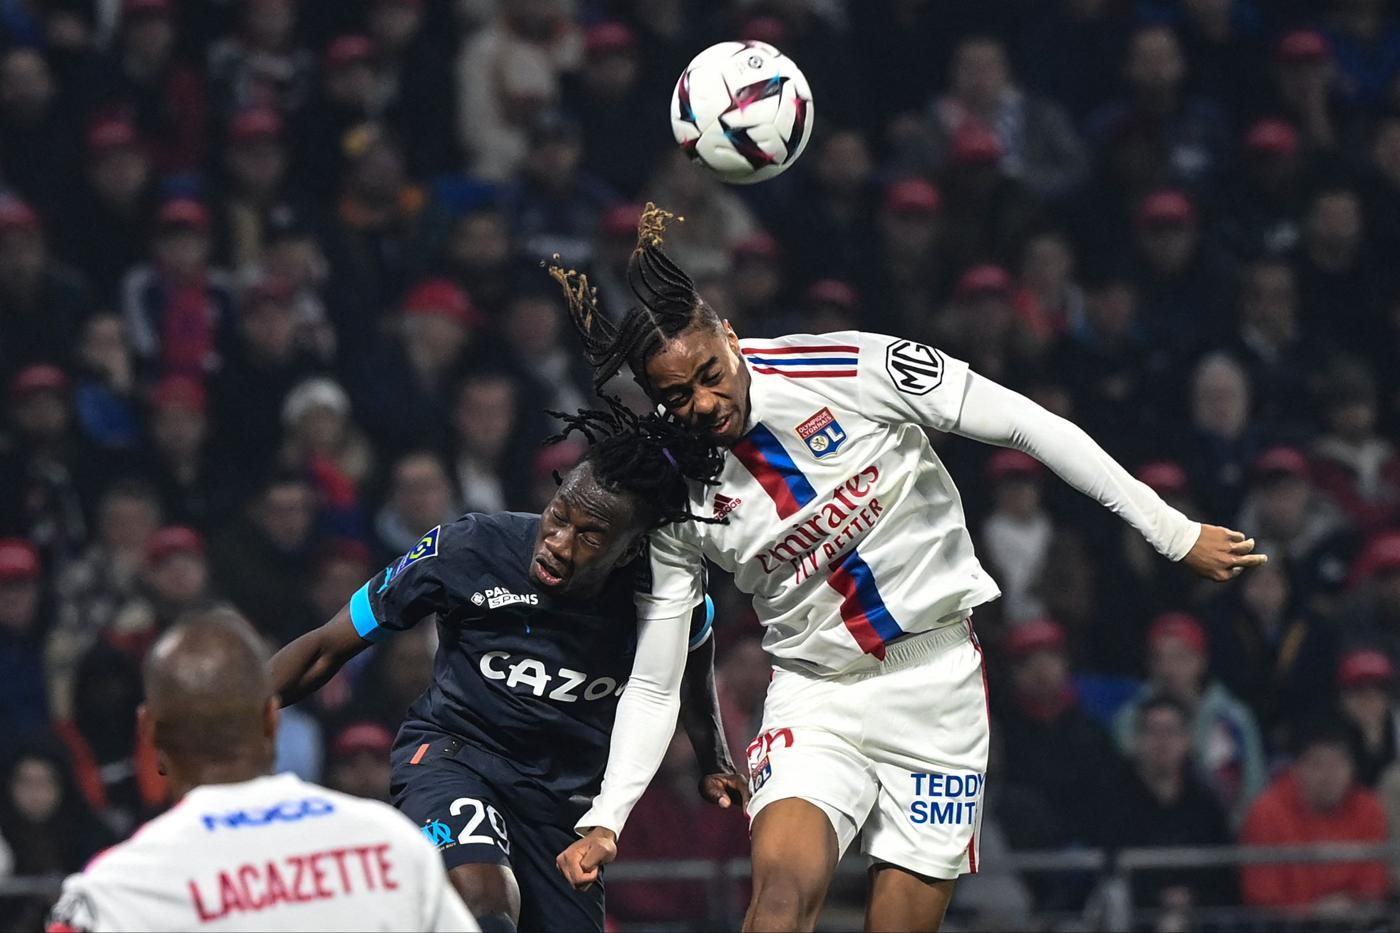 Lyon v Marsylia - 1:2. Mistrzostwa Francji, runda 32. Przegląd meczu, statystyki.